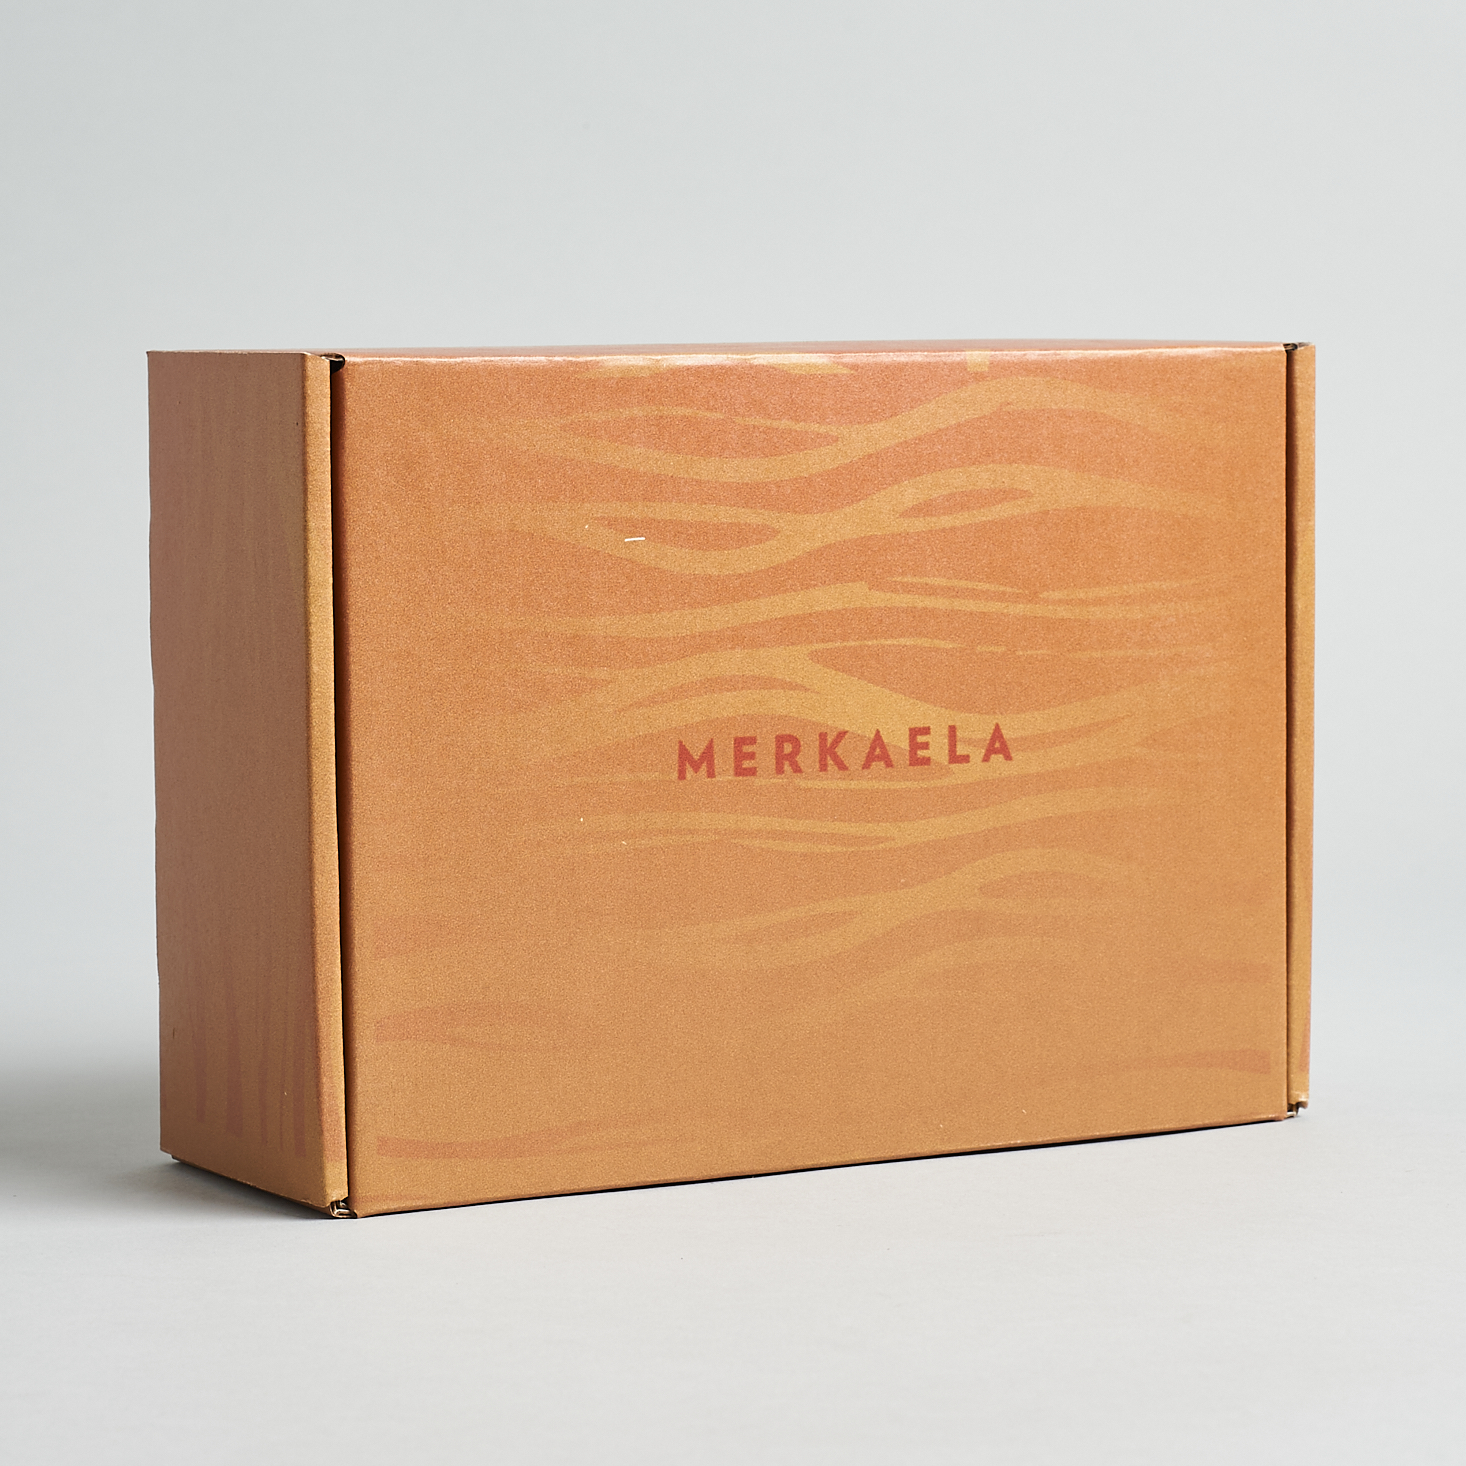 Merkaela Natural Self-Care Box Review + Coupon – Summer 2020